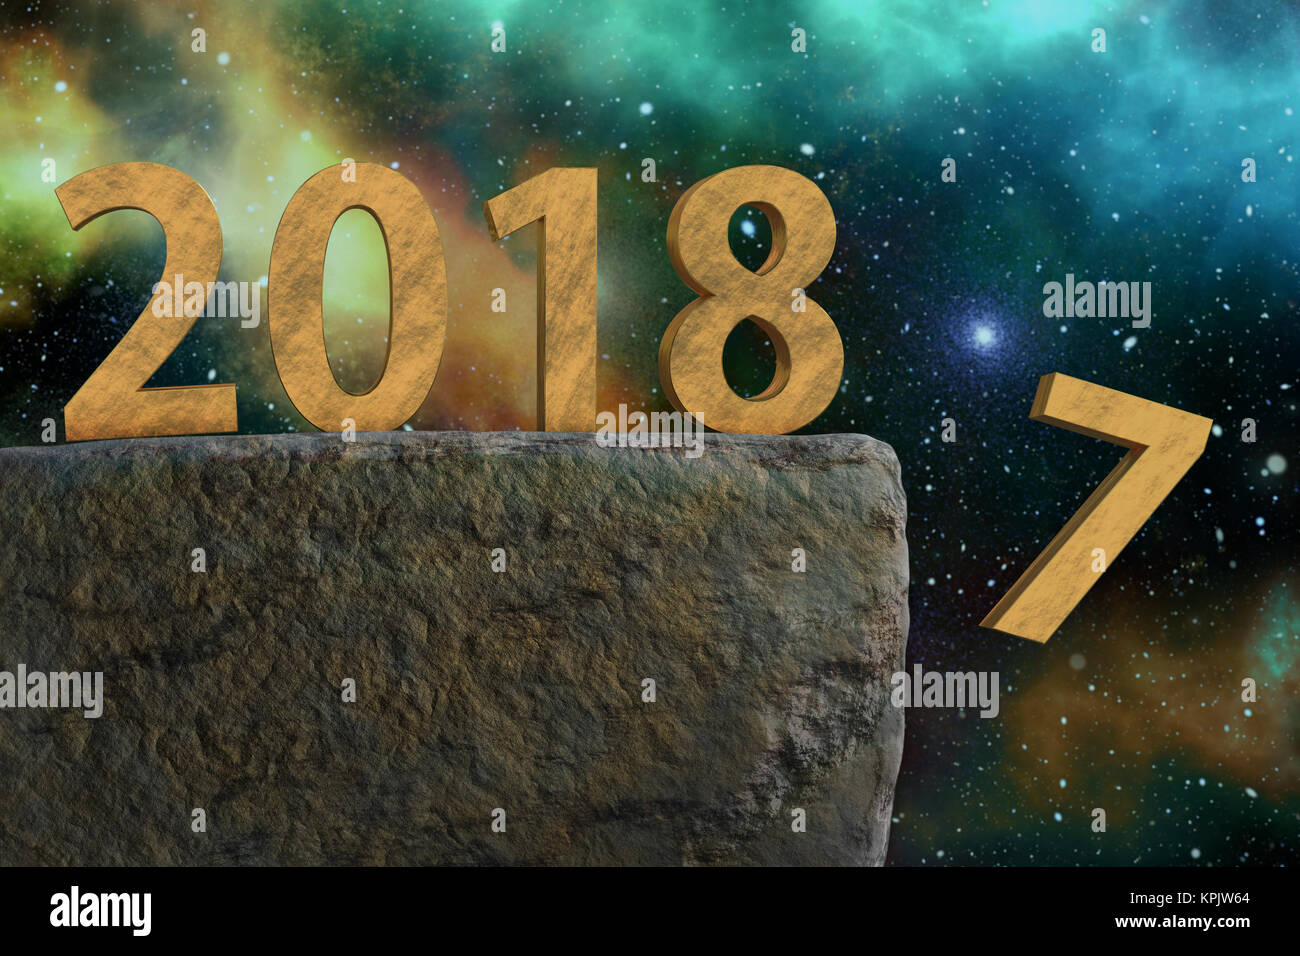 Image 3D reconstruite de golden 2018 Nouvelle année date debout sur le point de rock avec sept chiffres relevant - abattu au-dessus de ciel étoilé Banque D'Images